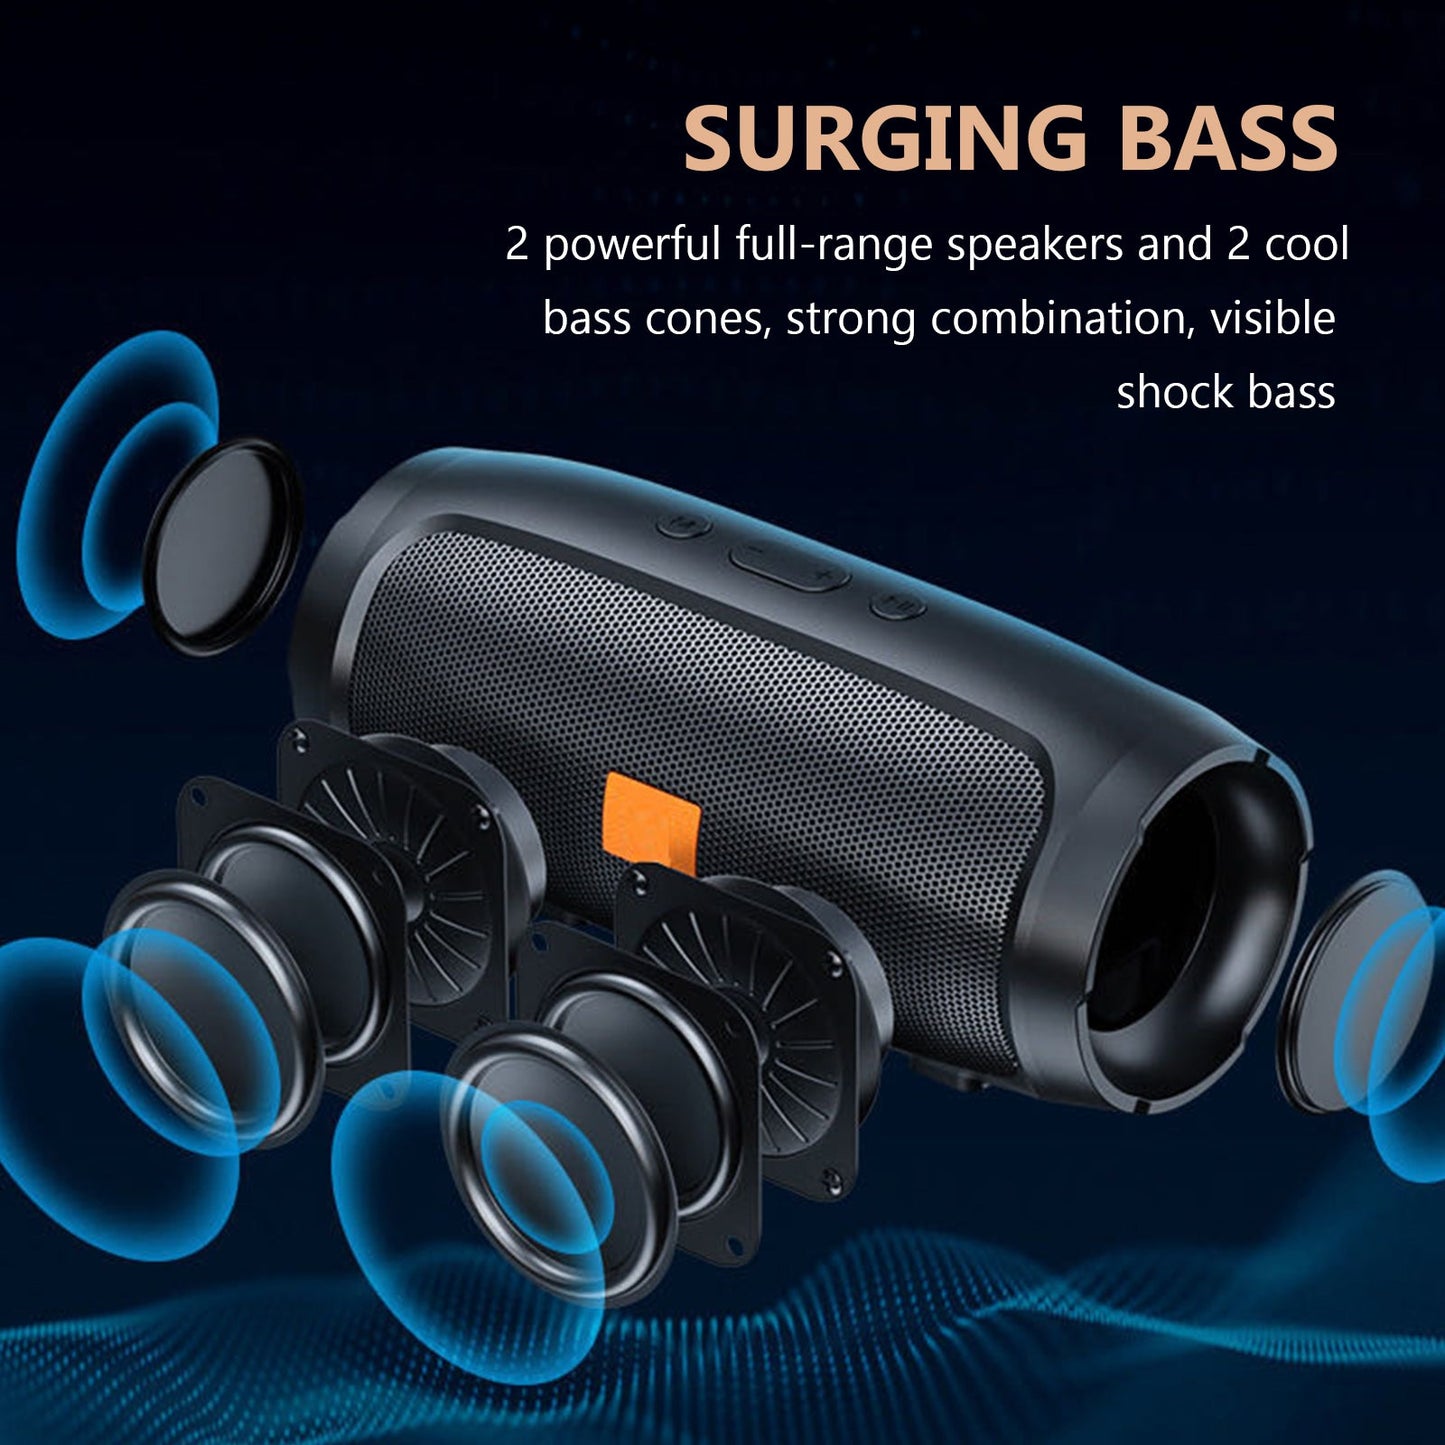 Bluetooth Speaker BT5 Portable Wireless Waterproof Stereo